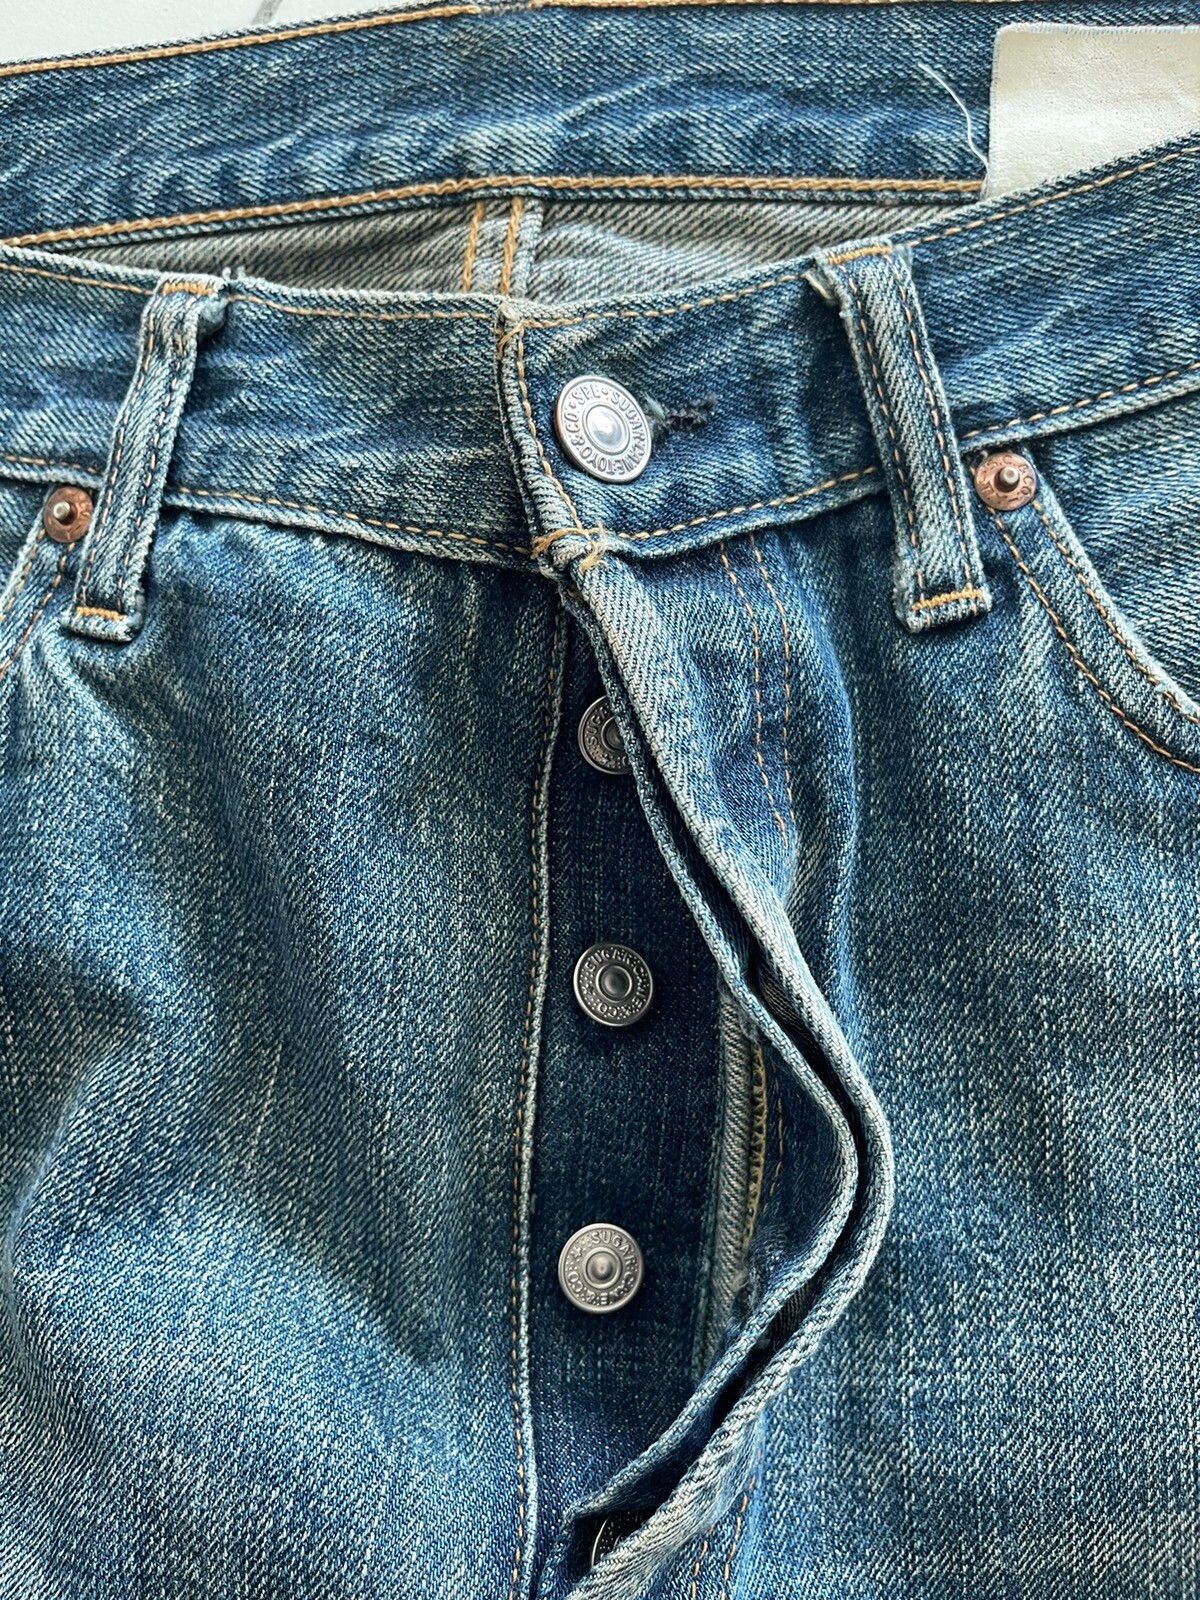 Vintage Sugar Cane Selvedge Denim Jeans - 10